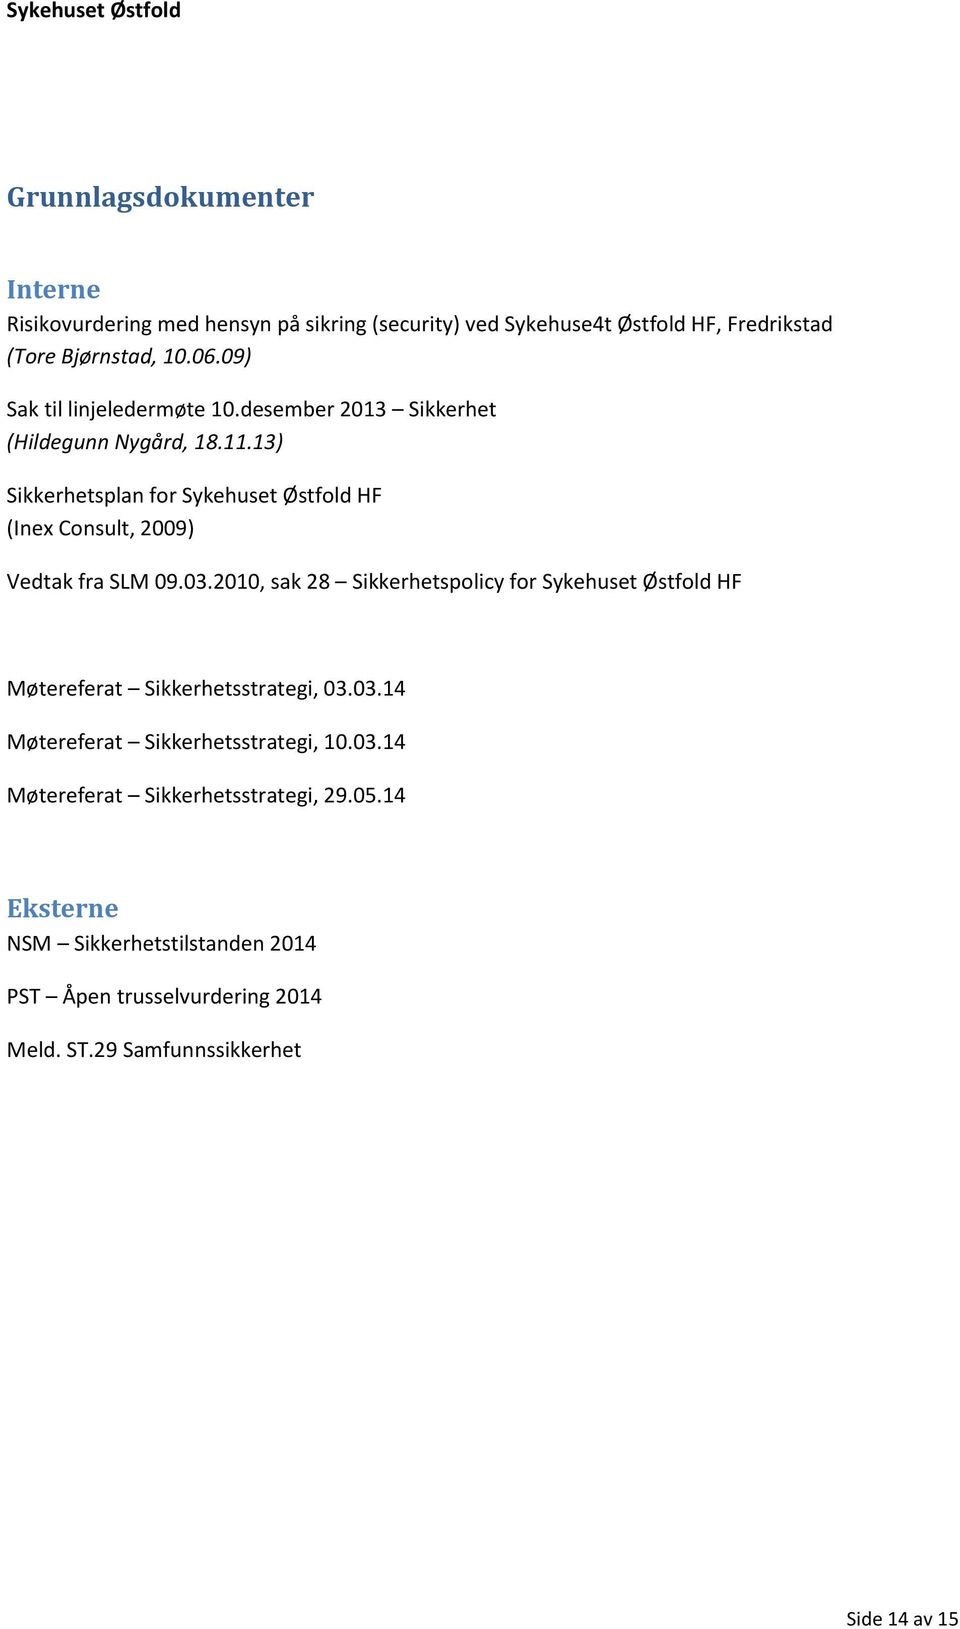 13) Sikkerhetsplan for Sykehuset Østfold HF (Inex Consult, 2009) Vedtak fra SLM 09.03.